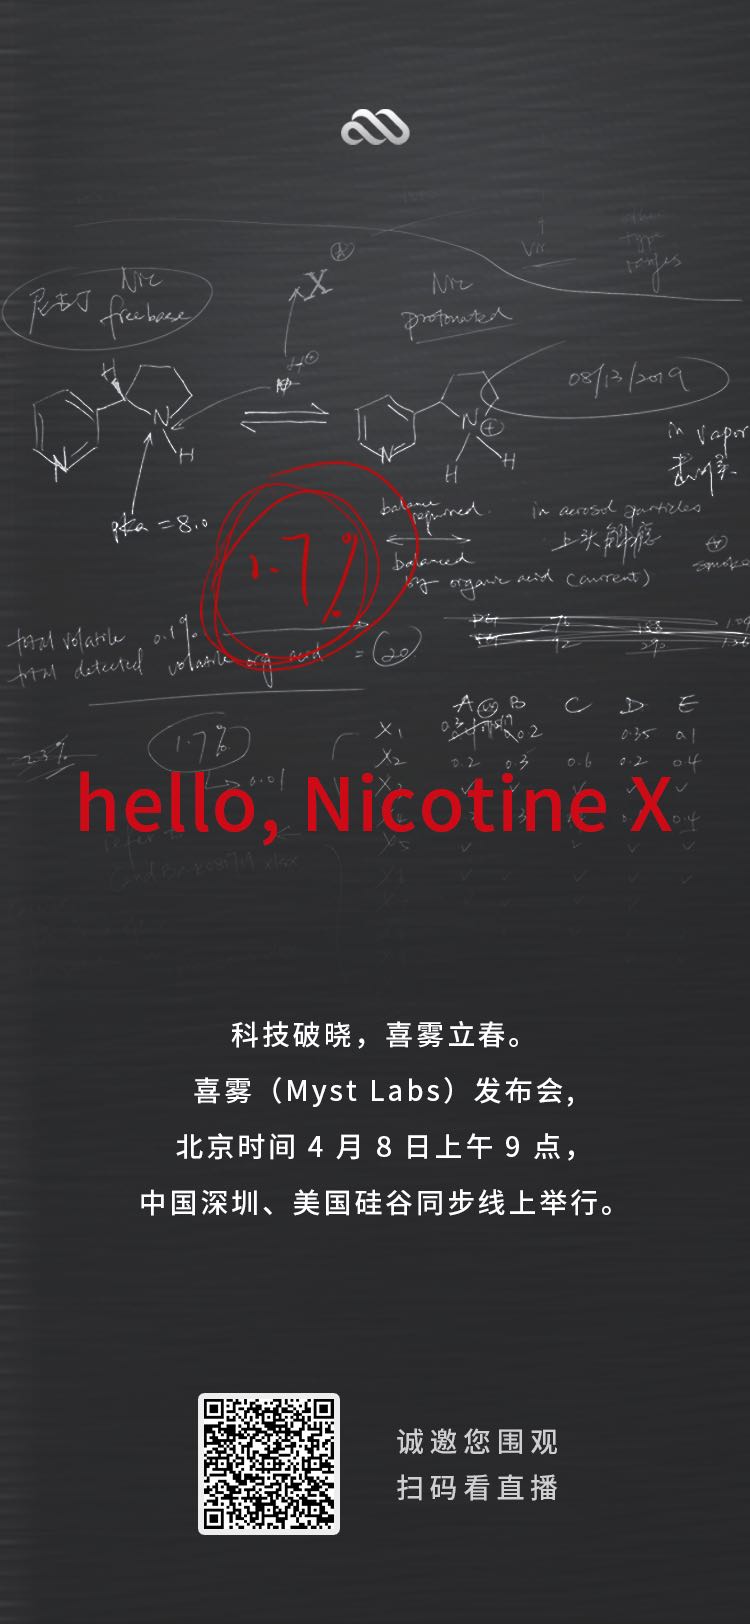 电子烟行业迎来利好，「尼古丁 X」技术发布！